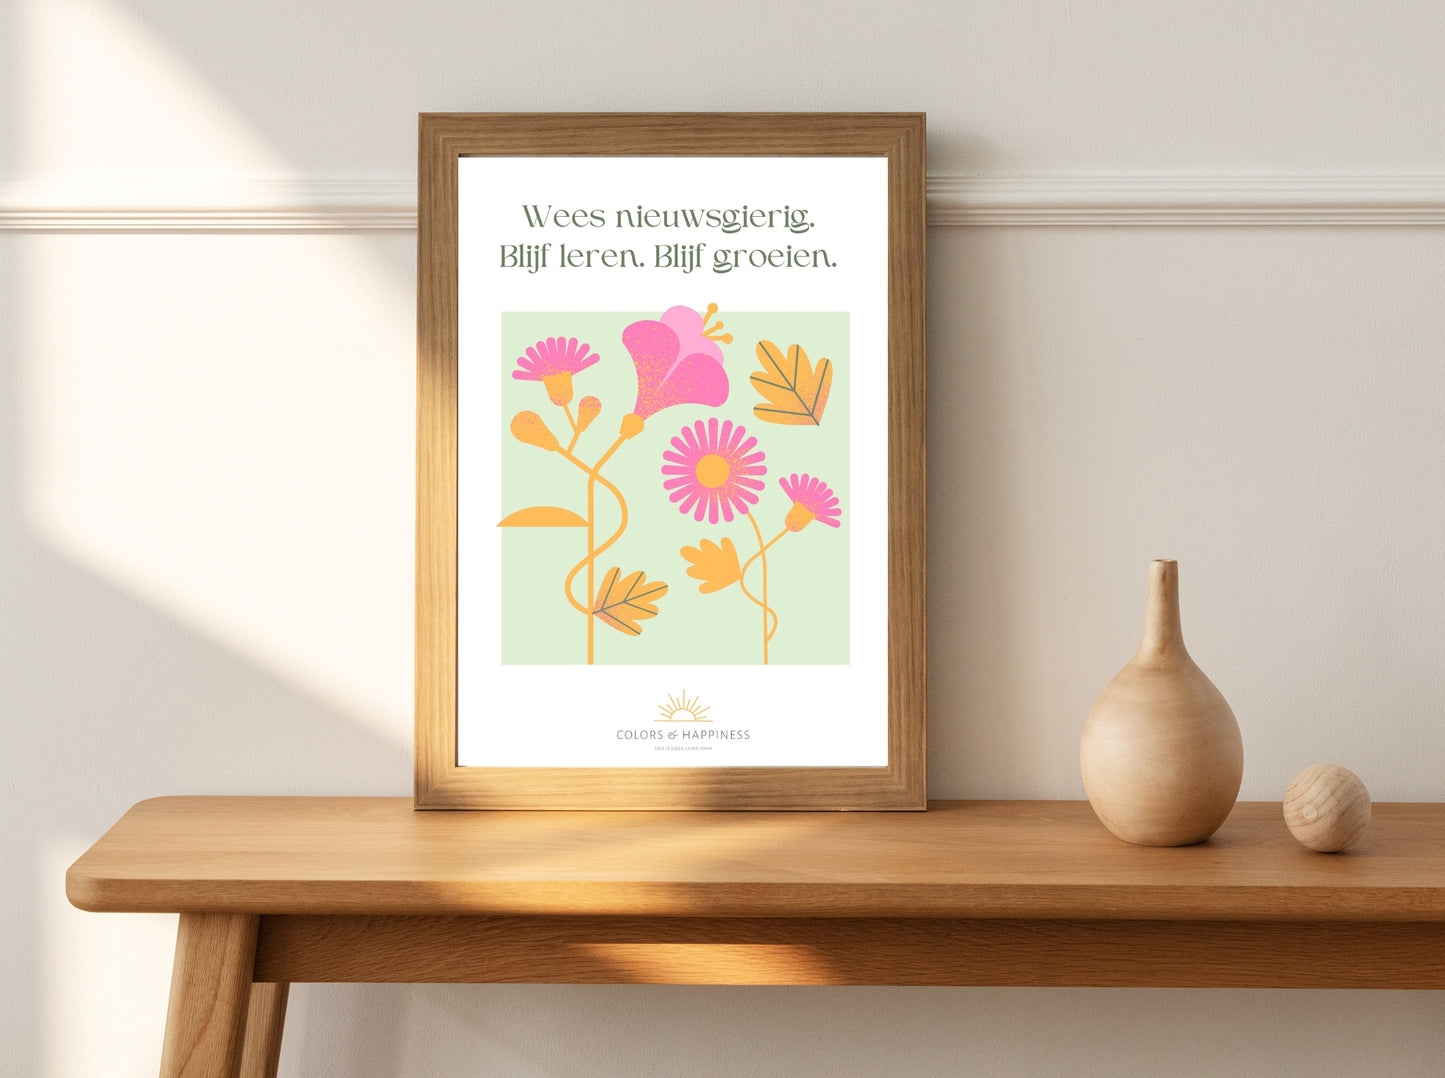 Inspirerende poster met quote "Wees nieuwsgierig..." en bloemen illustratie, digitale download voor een bewuster leven